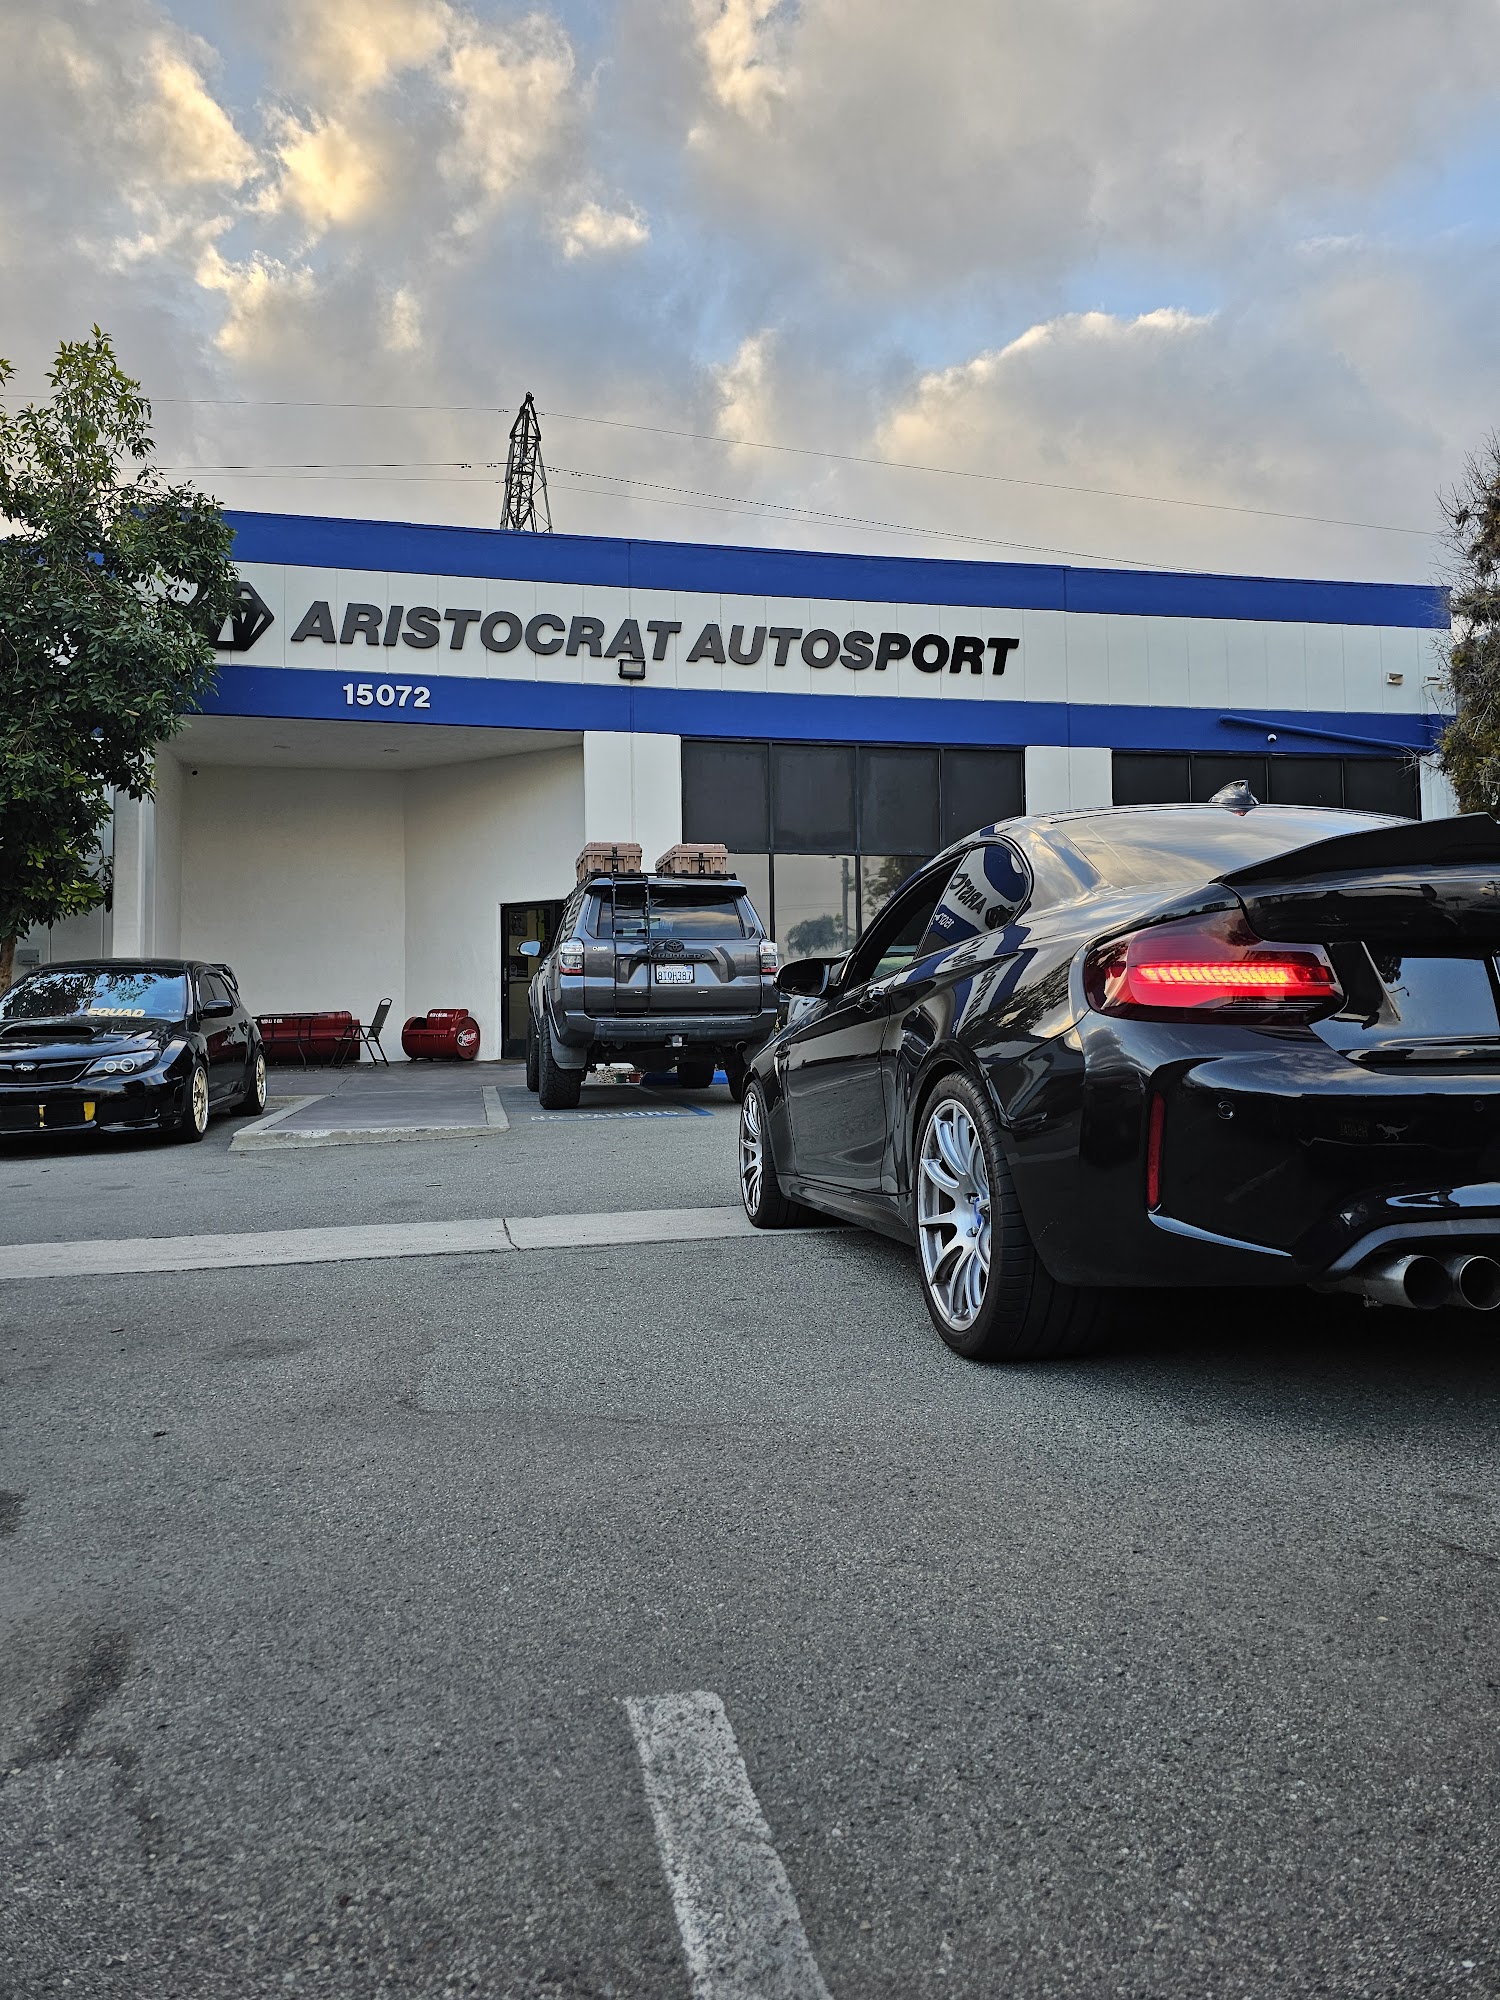 Aristocrat Autosport